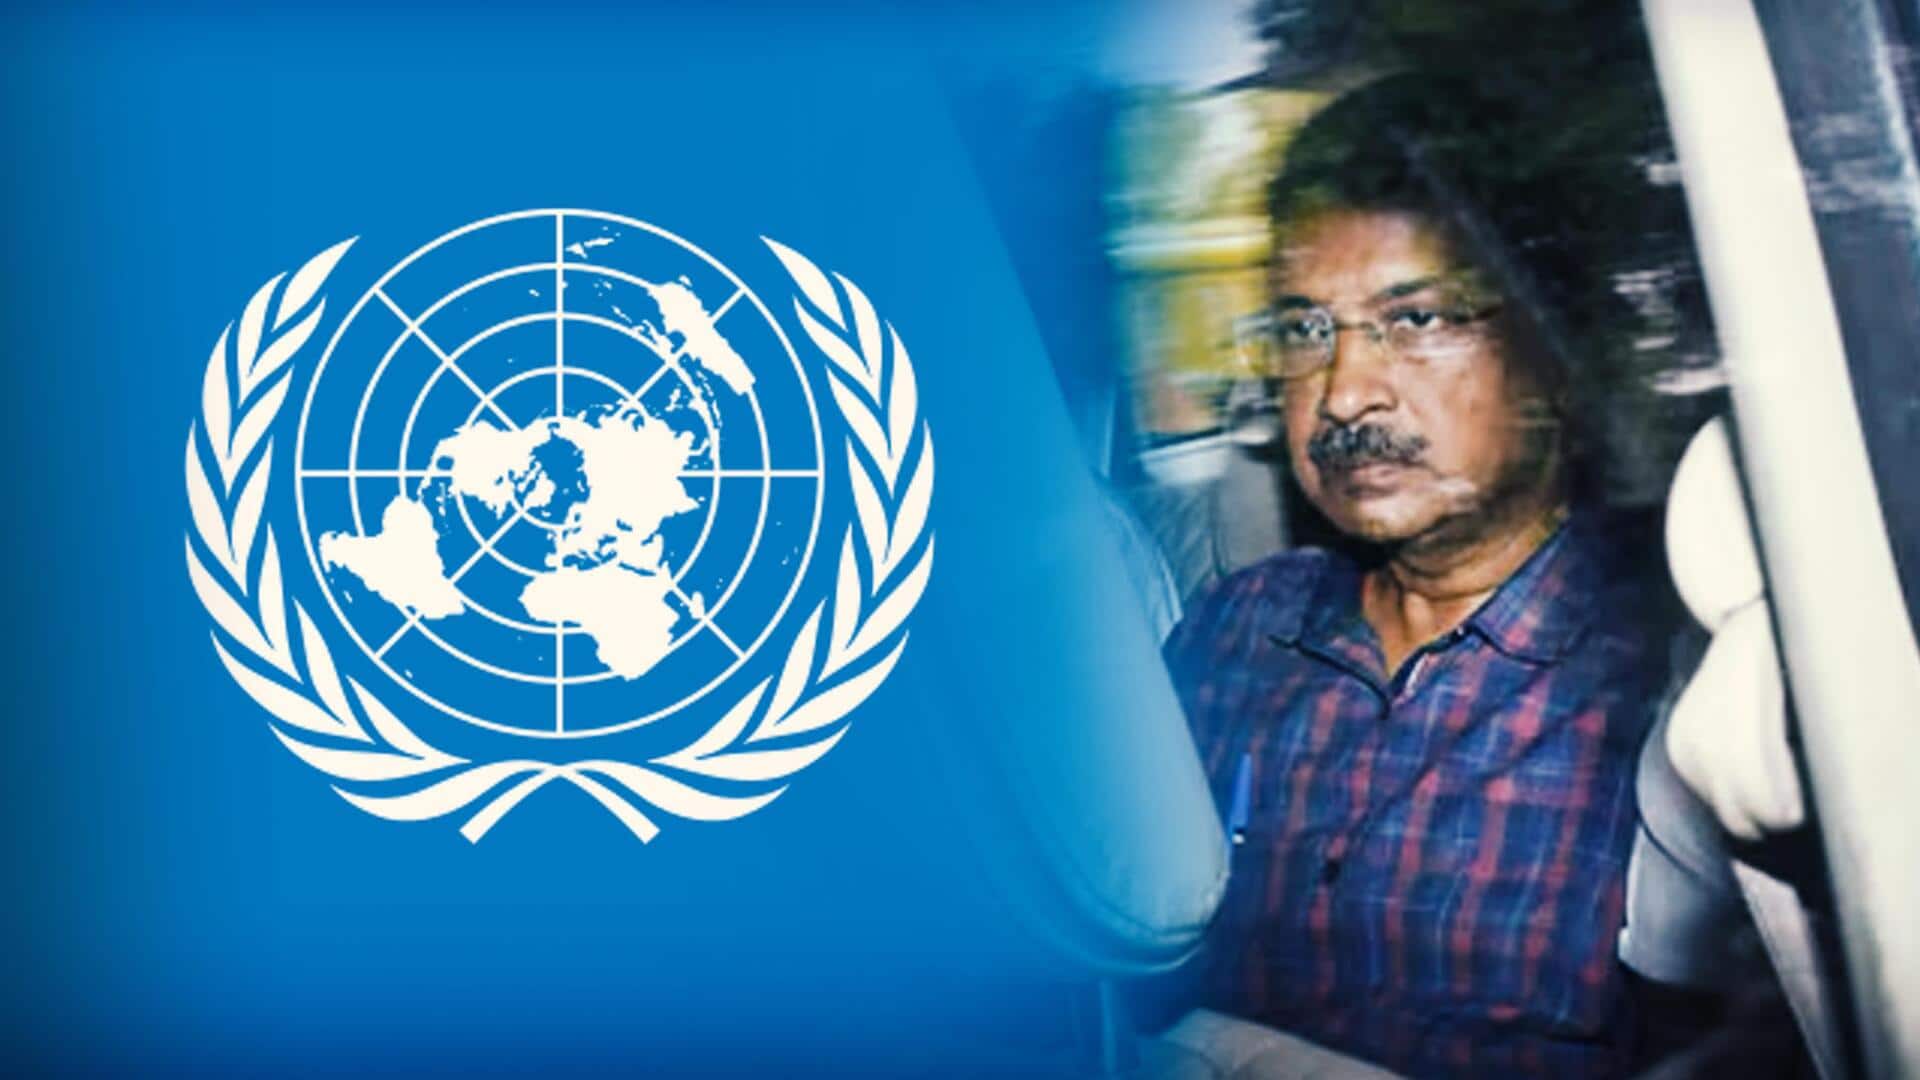 केजरीवाल की गिरफ्तारी पर संयुक्त राष्ट्र का बयान, बोला- उम्मीद है सभी के अधिकार सुरक्षित रहेंगे